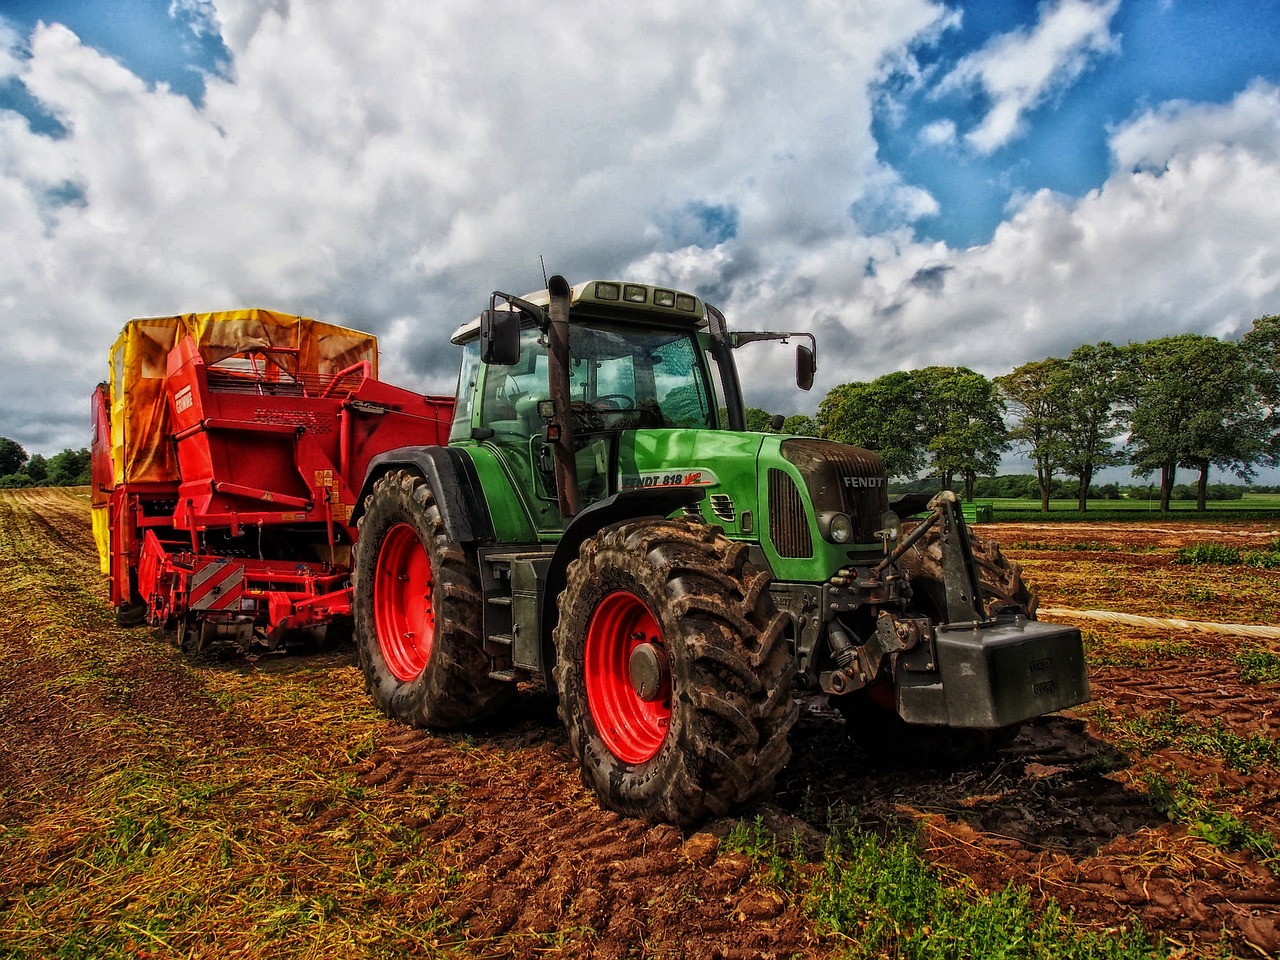 Na zdjęciu widoczny jest duży, zielony traktor, ktory wykonuje prace na polu.